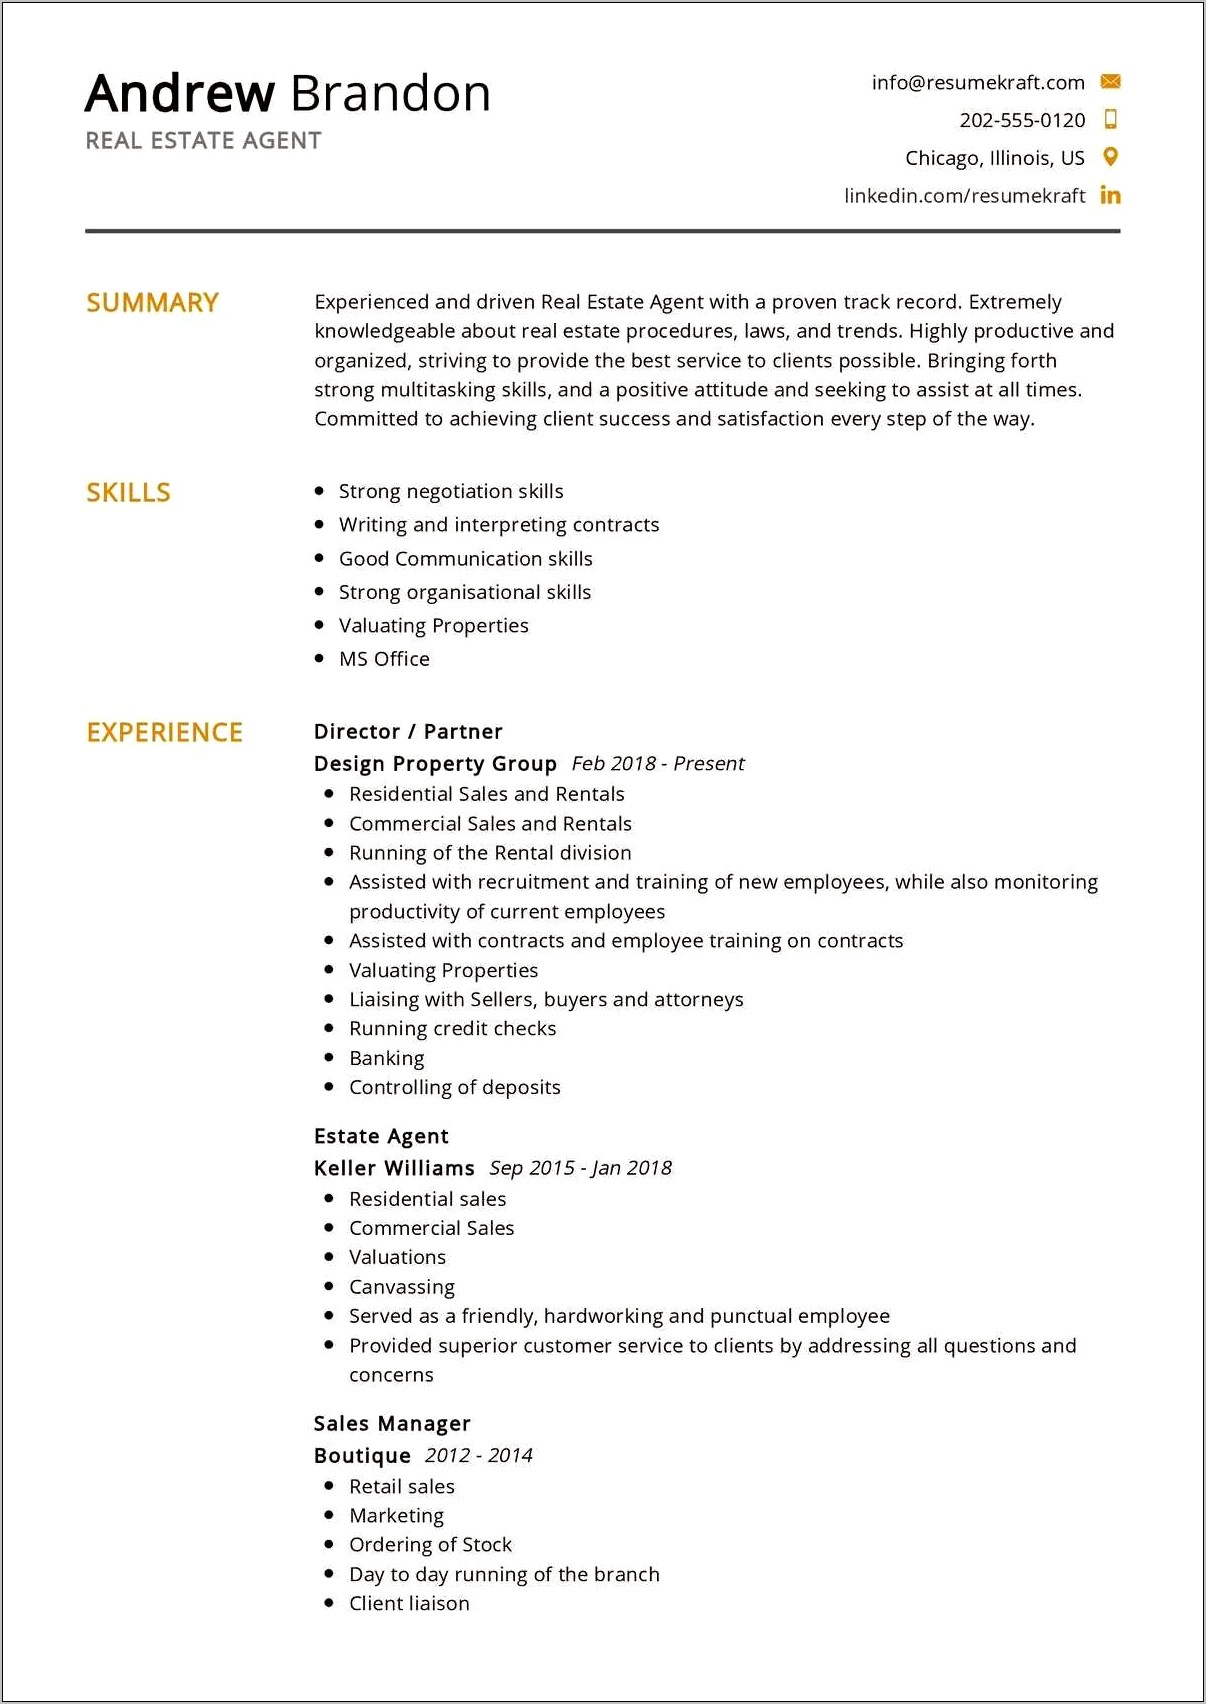 Resume Description For Real Estate Agent